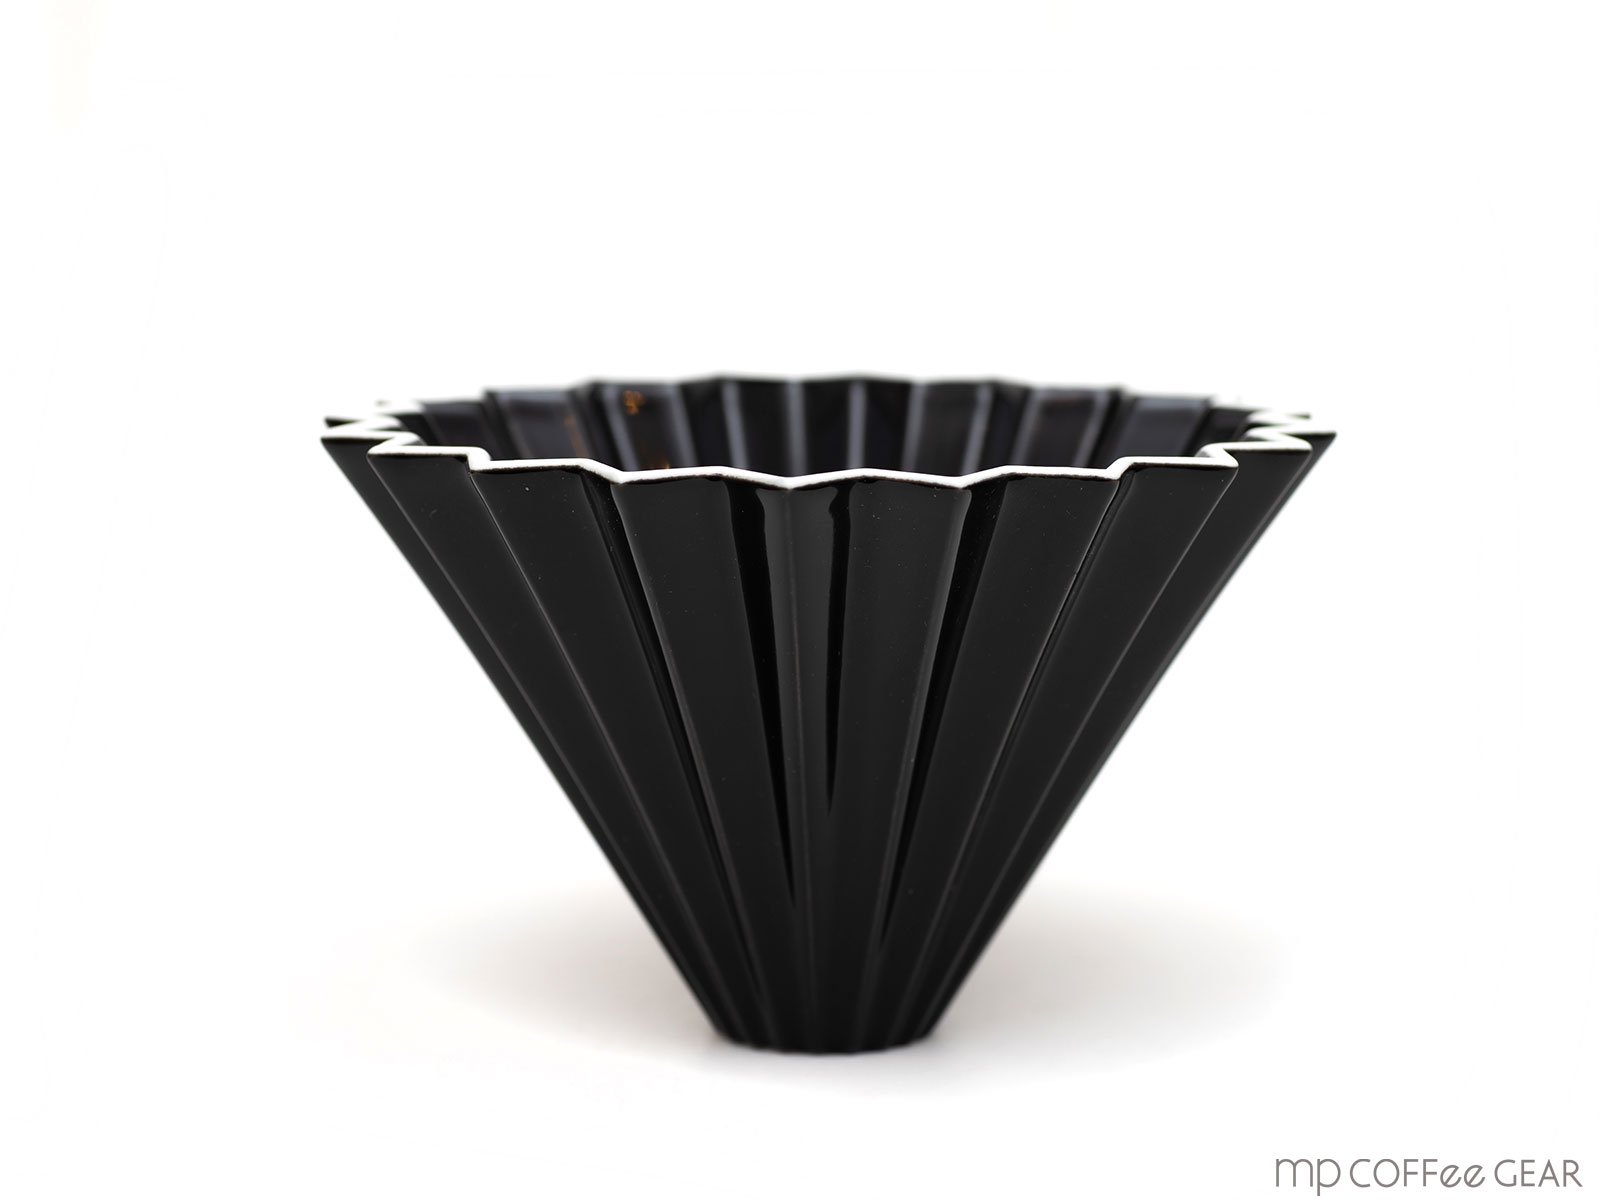 Origami オリガミドリッパーm ブラック Marve マーヴェ ナチュラルモダン雑貨 通販 キッチン テーブルウェア インテリア